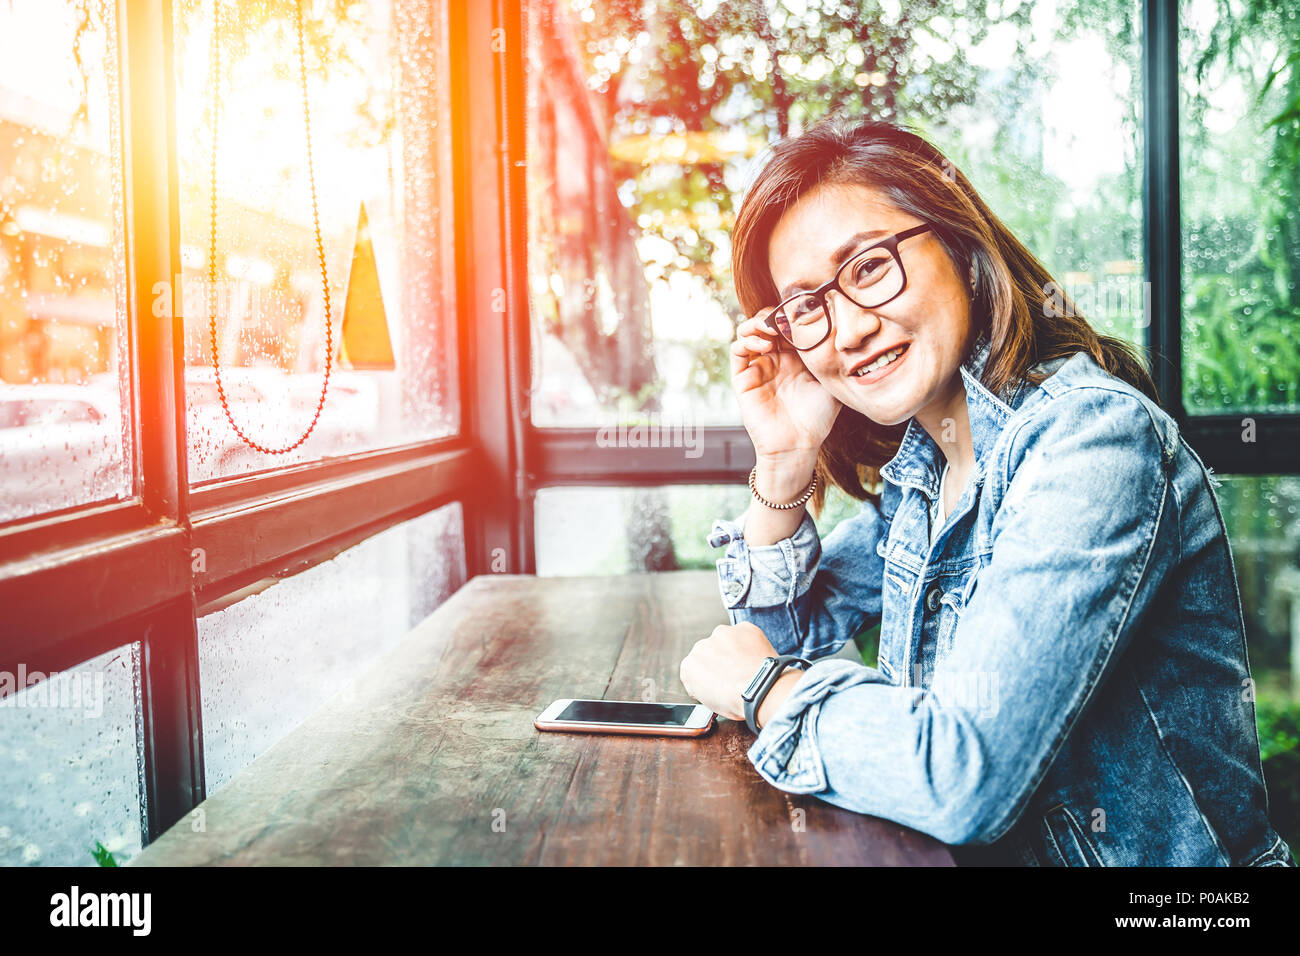 Brille nerd Hipster asiatische Frau sitzen lächeln in Glas windows Cafe mit Smartphone Stockfoto